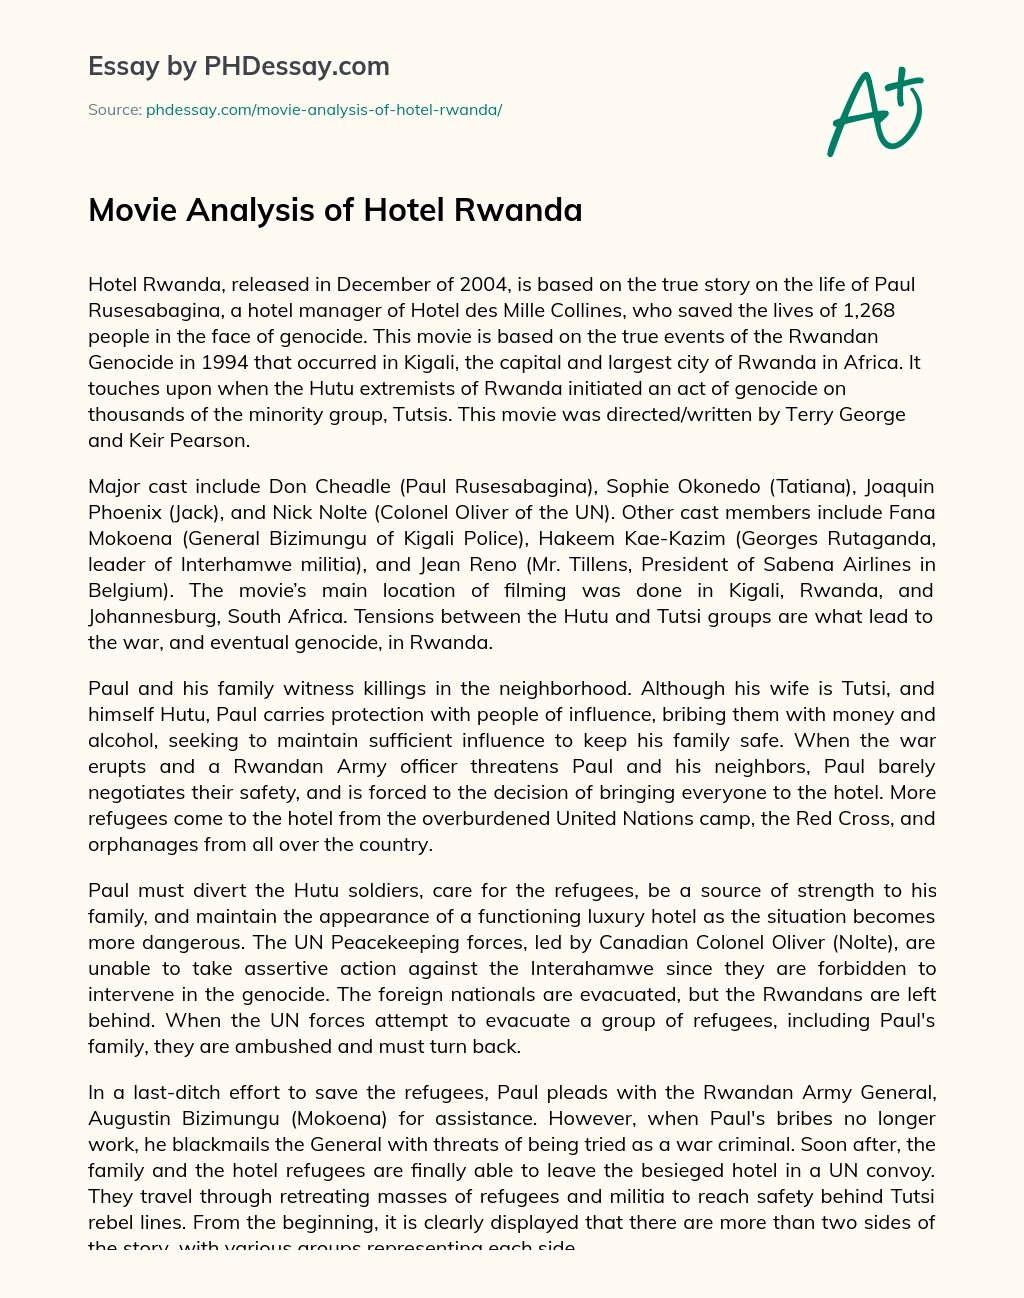 Movie Analysis of Hotel Rwanda essay